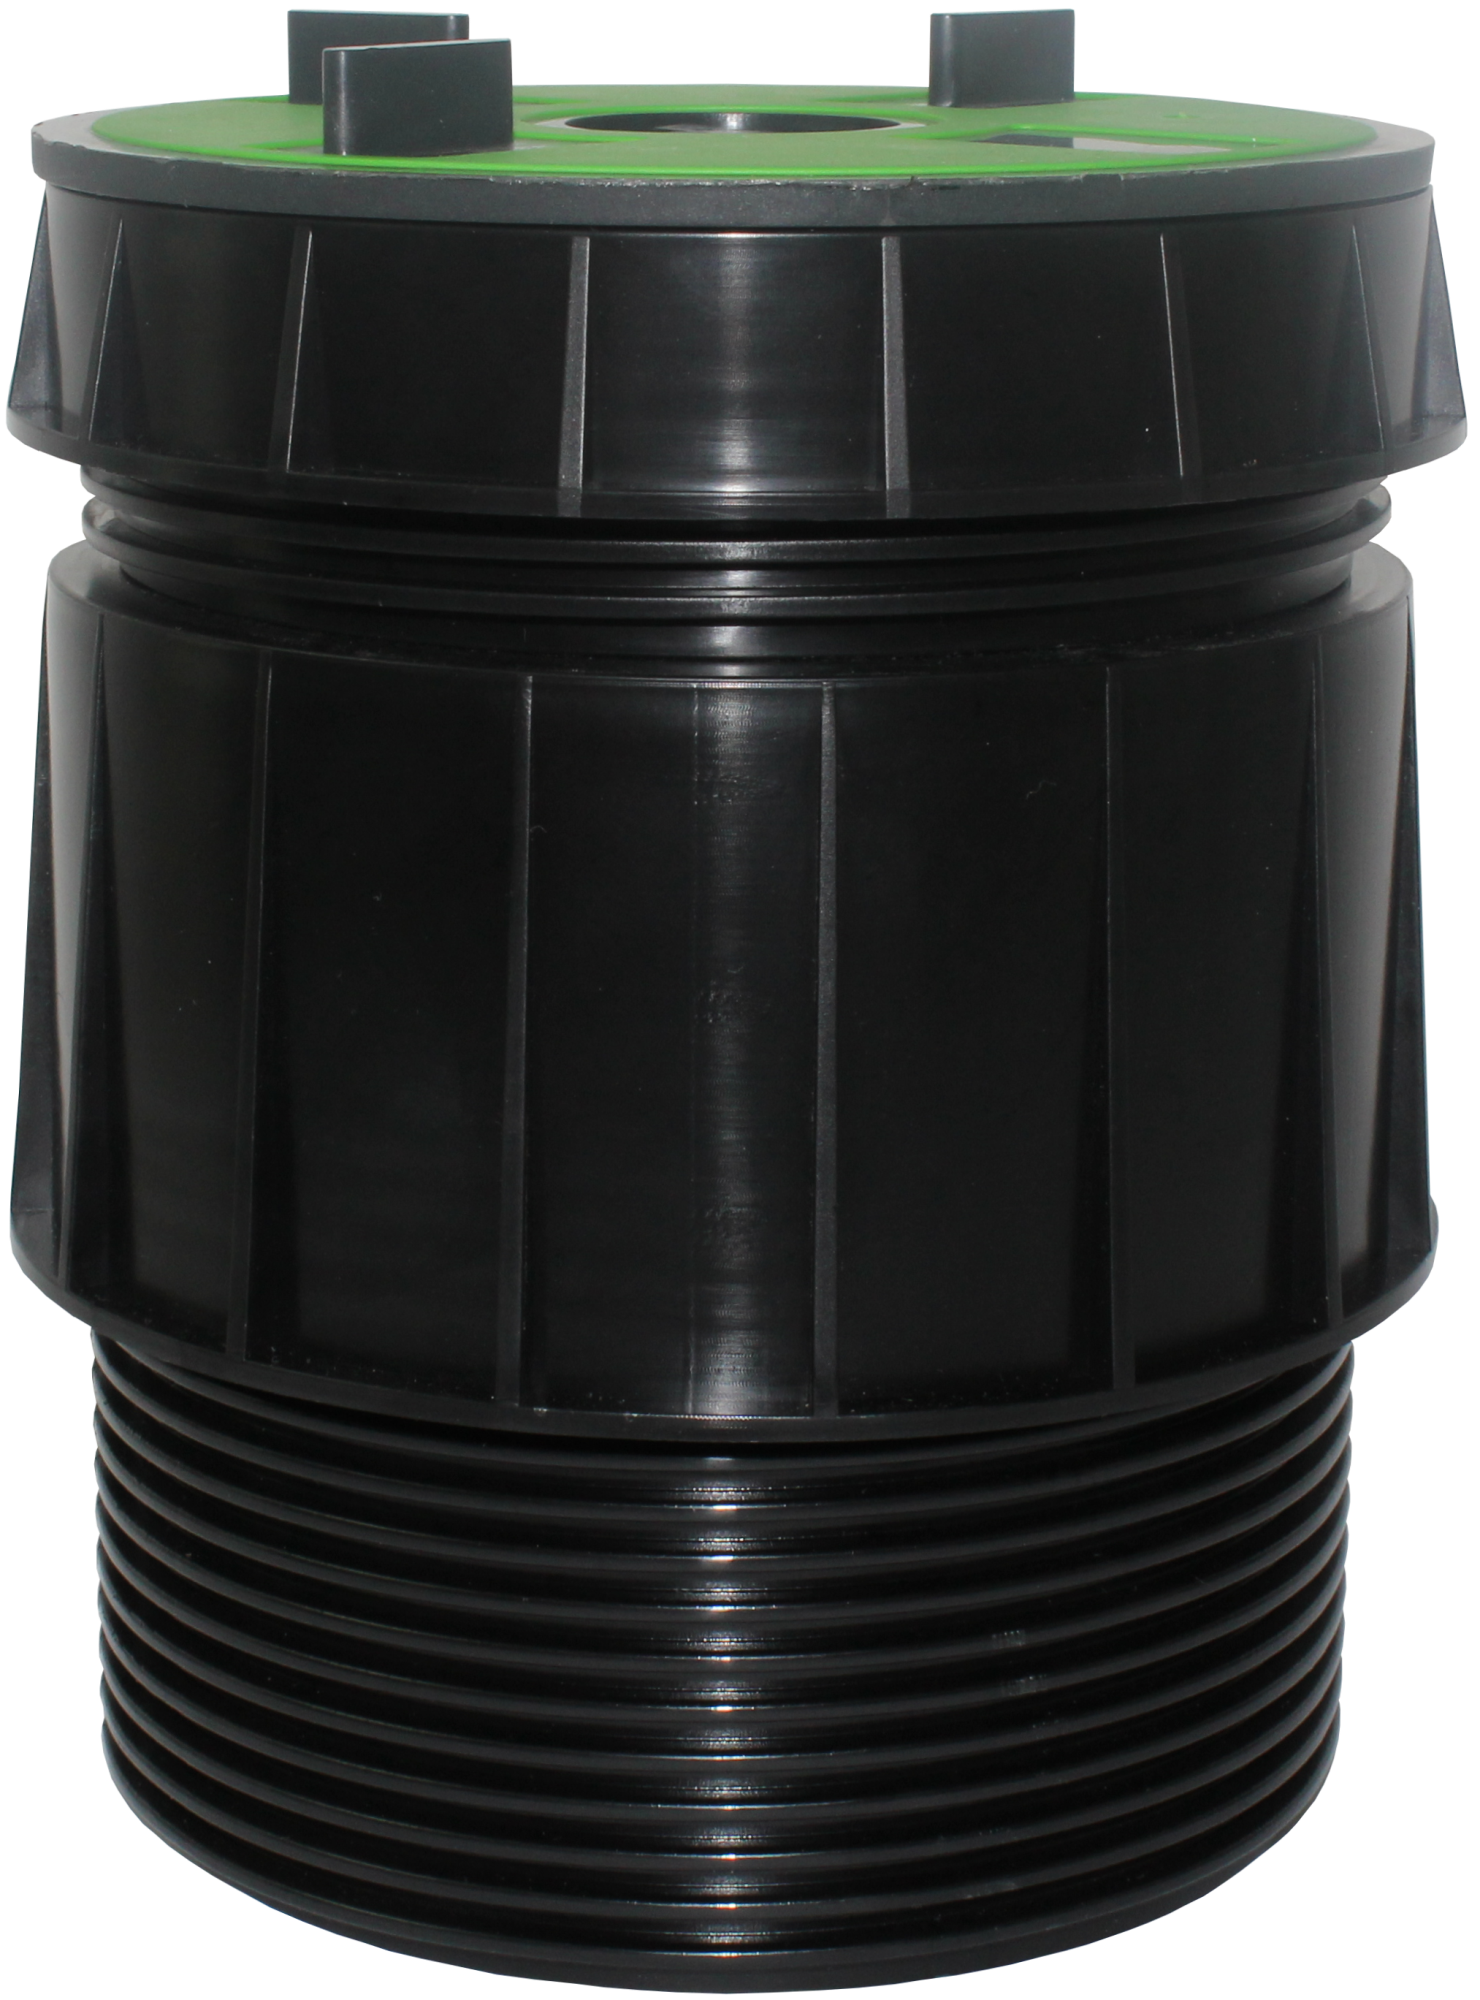 VOLFI Teleskop Dreh-Stelzlager, 5-tlg. Kunststoff, TL-VT100, 3Stege 8/10-140mm, verstb.100-175mm